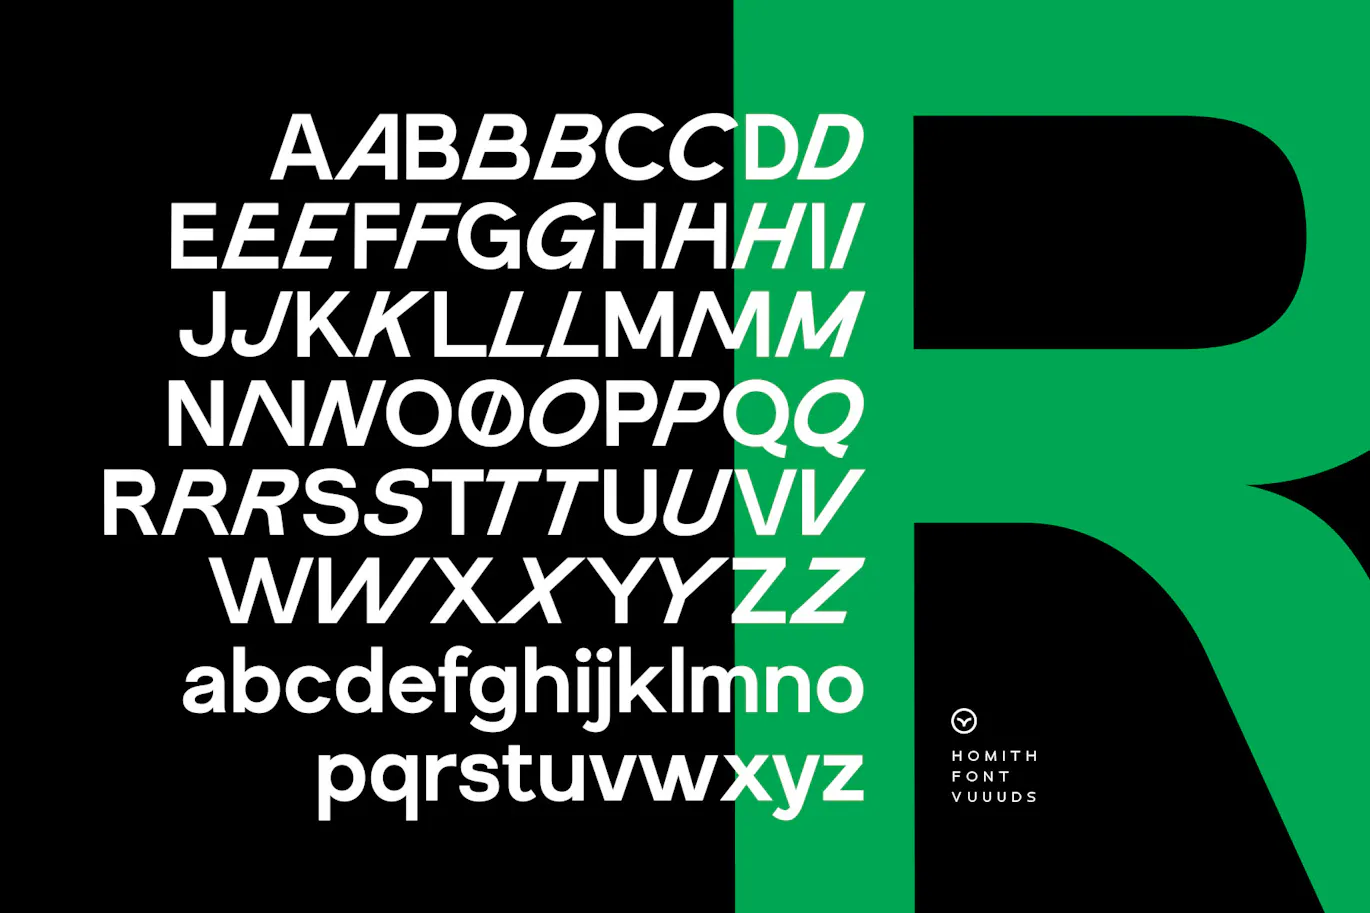 个性斜体效果的英文无衬线字体 - Homith 设计字体 第12张